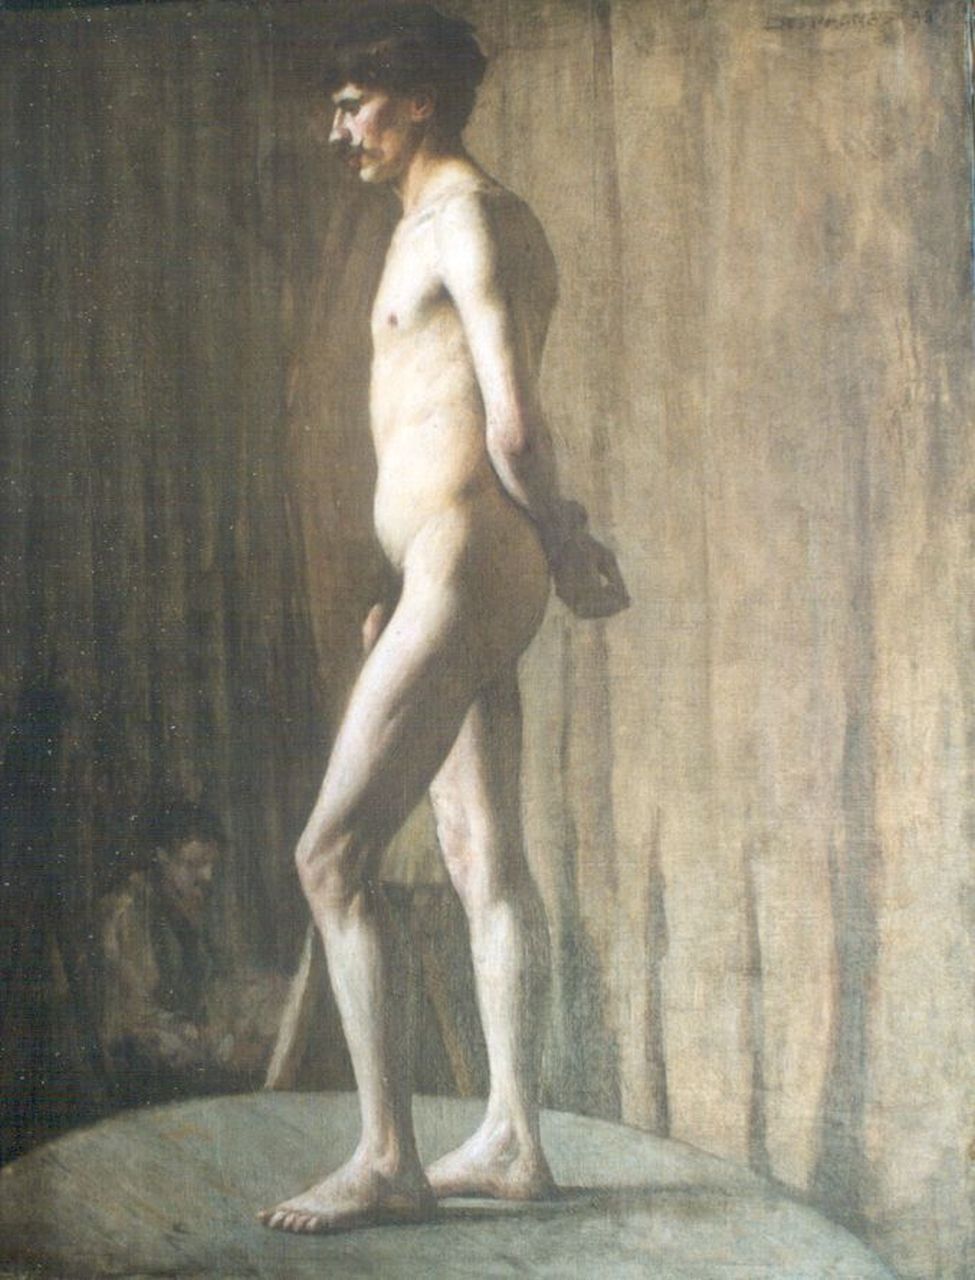 Espagnat G. d' | Georges d' Espagnat, Manlijk naakt, olieverf op doek 81,0 x 65,0 cm, gesigneerd rechtsboven en gedateerd '98